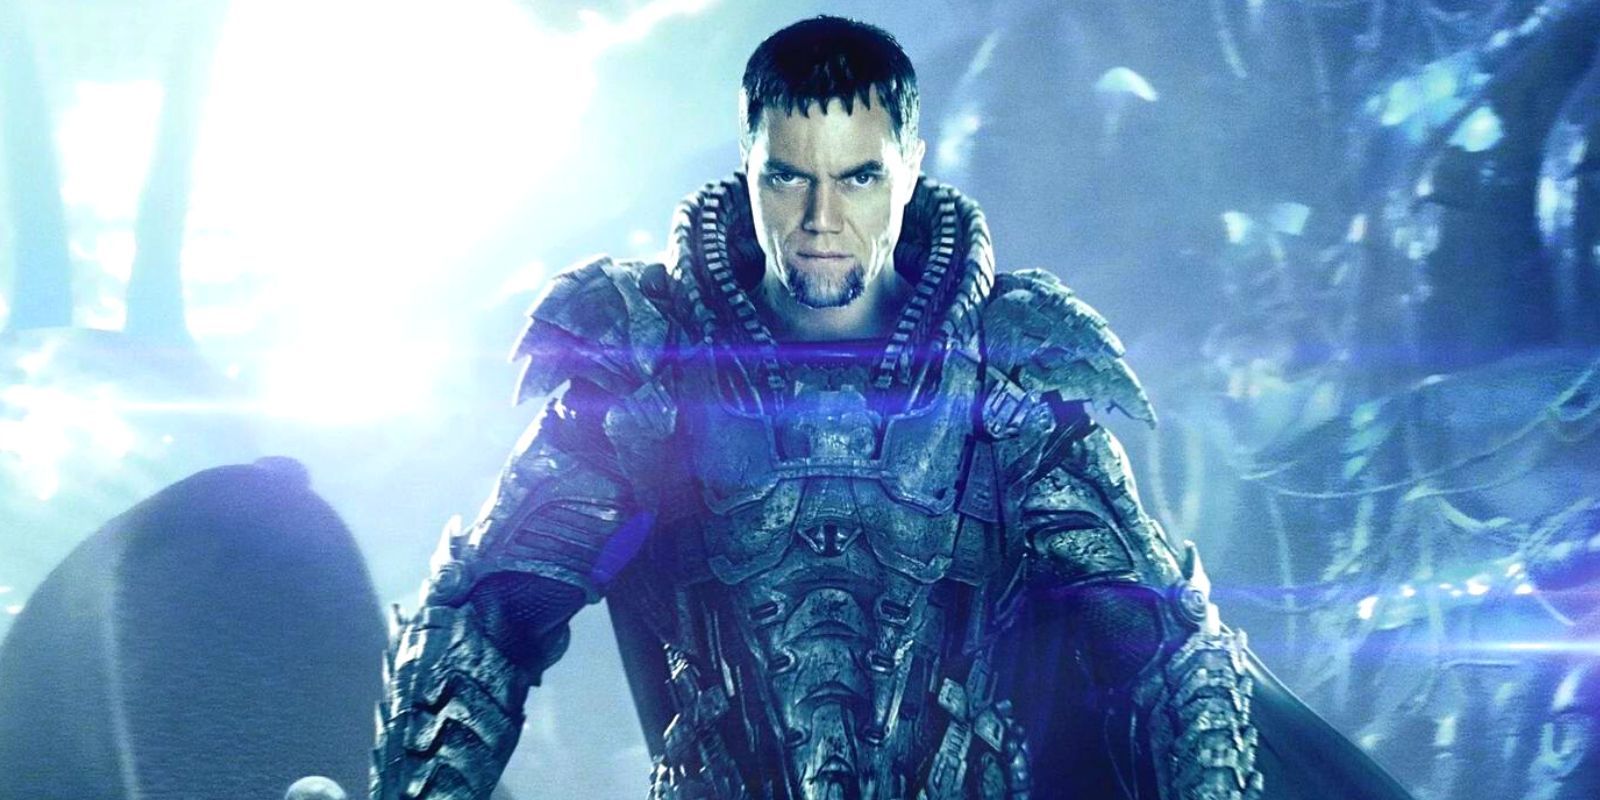 General Zod com armadura completa, parado com uma luz ofuscante atrás dele